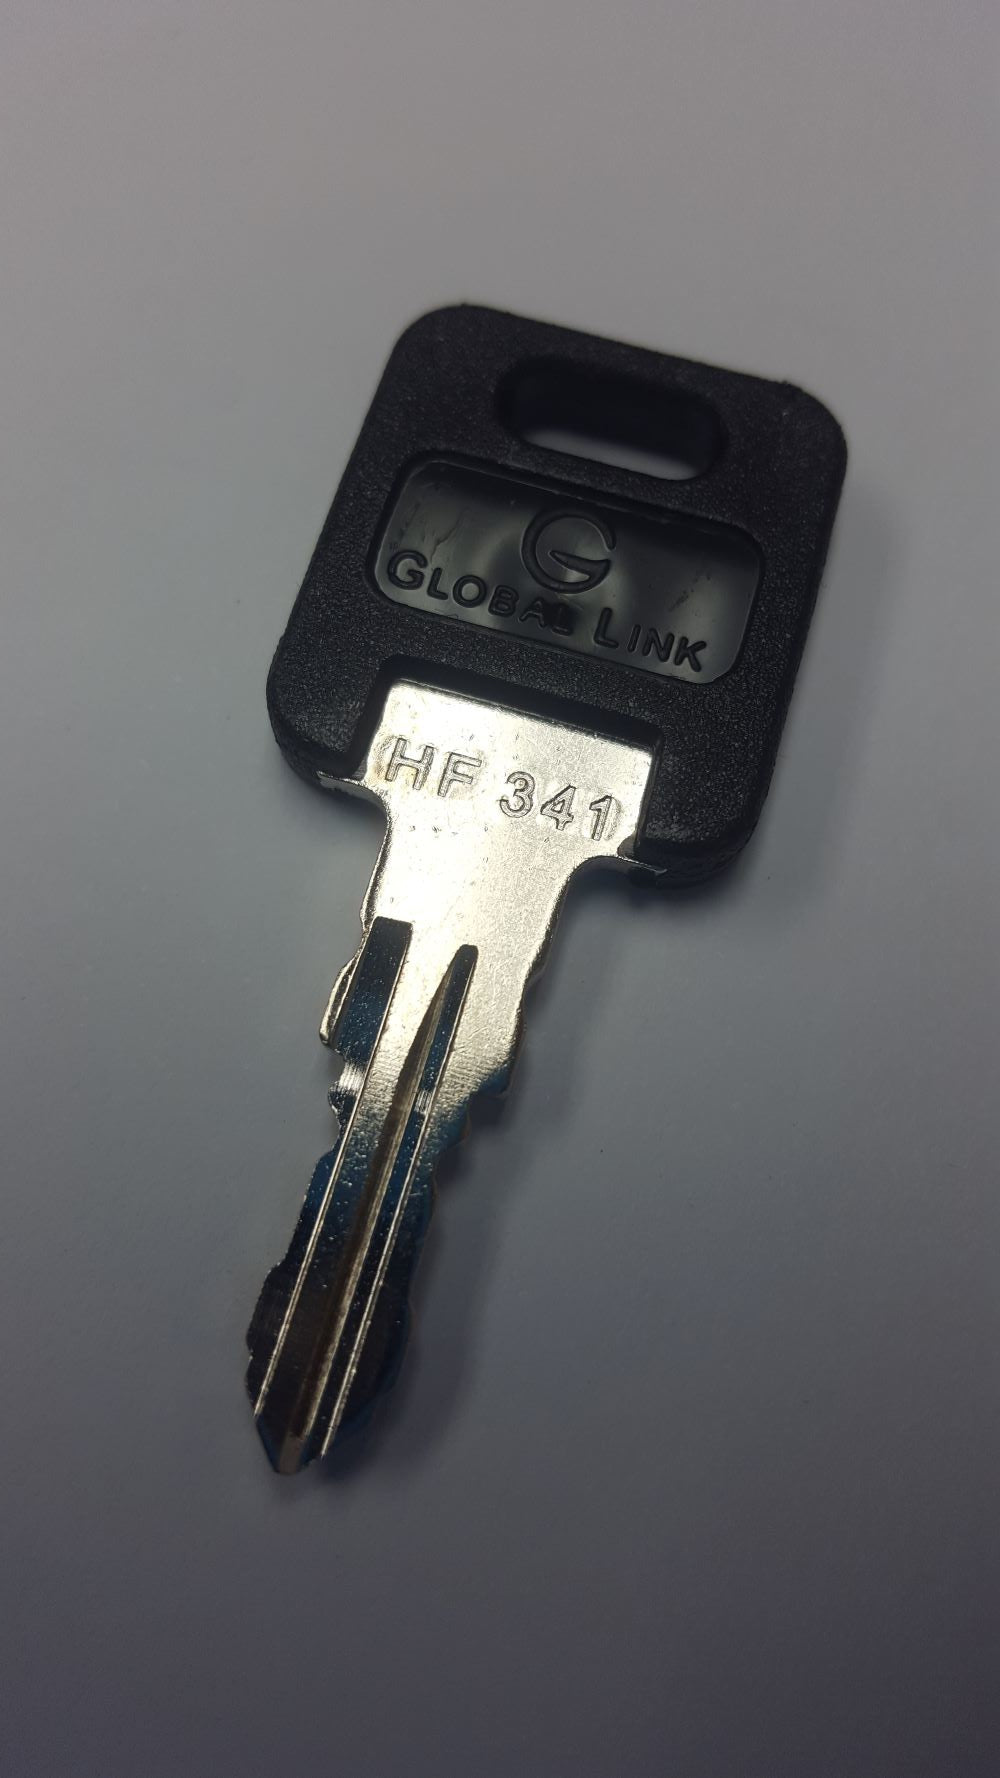 CPG KEY-HF-341 Pre-cut Stamped FIC Replacemnt HF341 Key